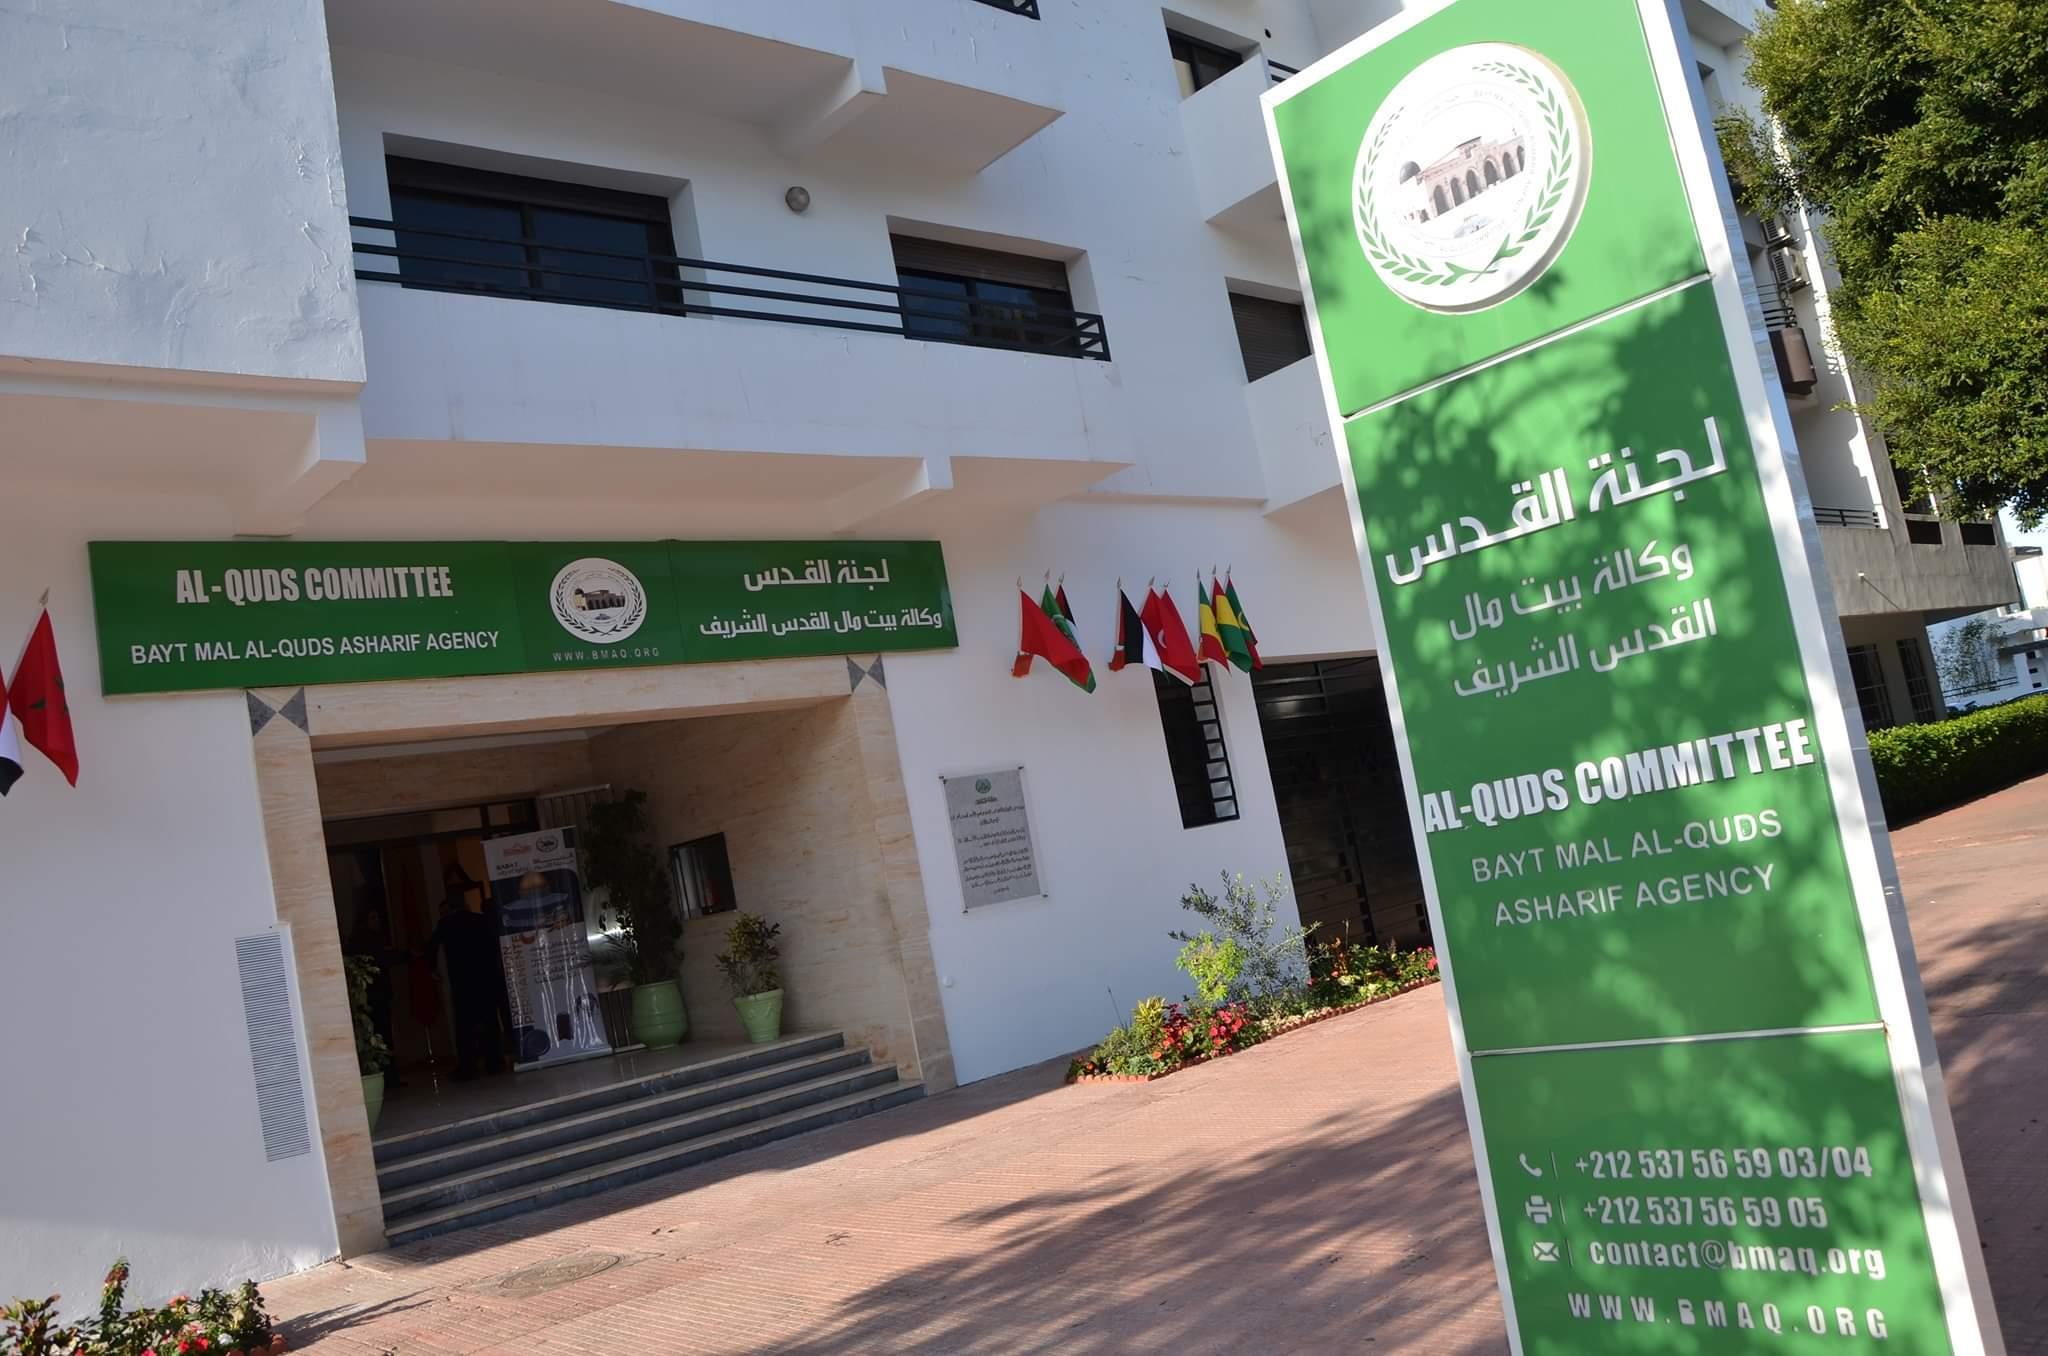 L'Agence Bayt Mal Alqods Acharif soutient des centres hospitaliers de la ville sainte avec des médicaments et équipements biomédicaux